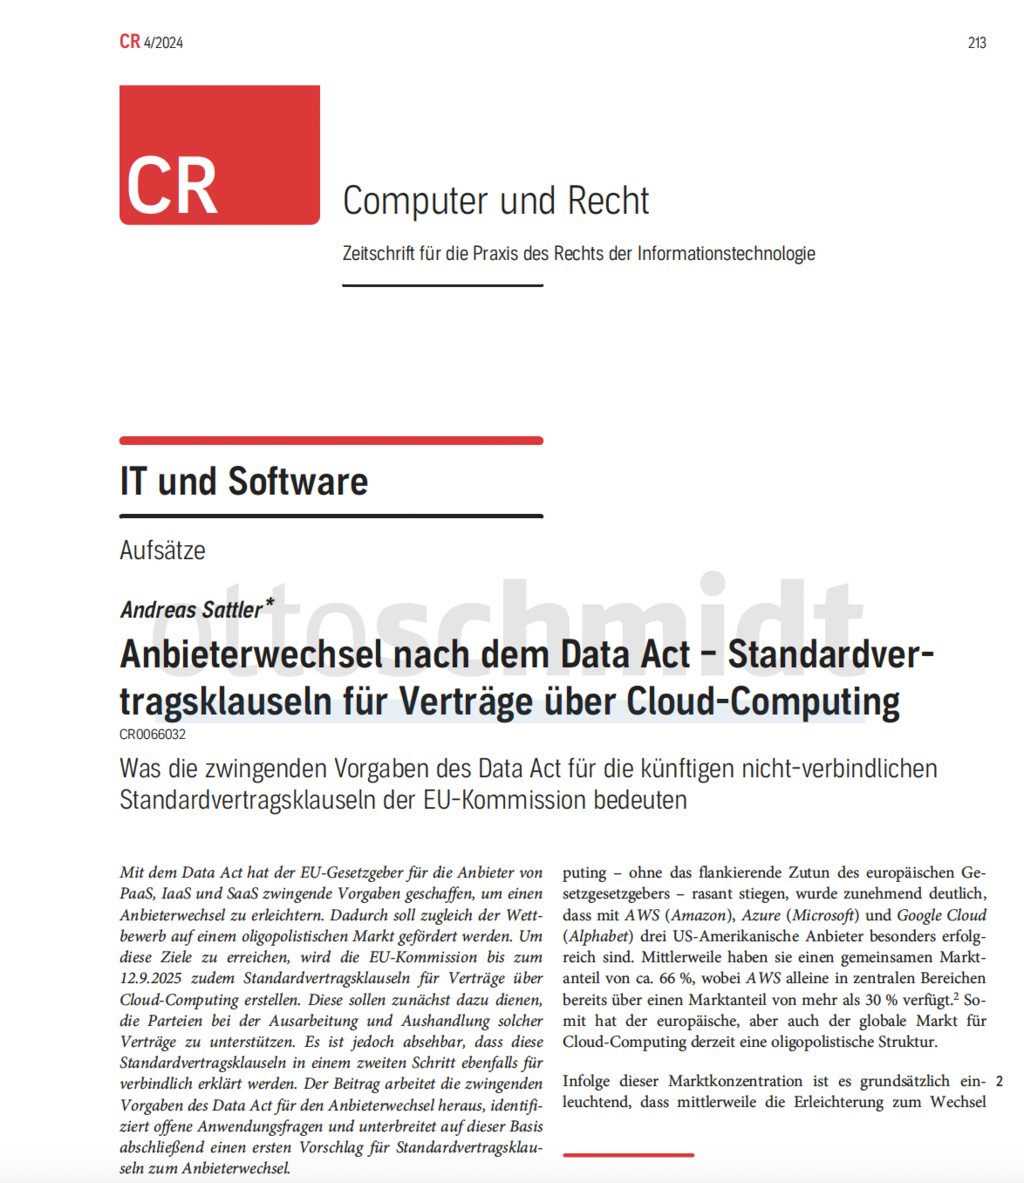 Anbieterwechsel nach dem Data Act – Standardvertragsklauseln für Verträge über Cloud-Computing